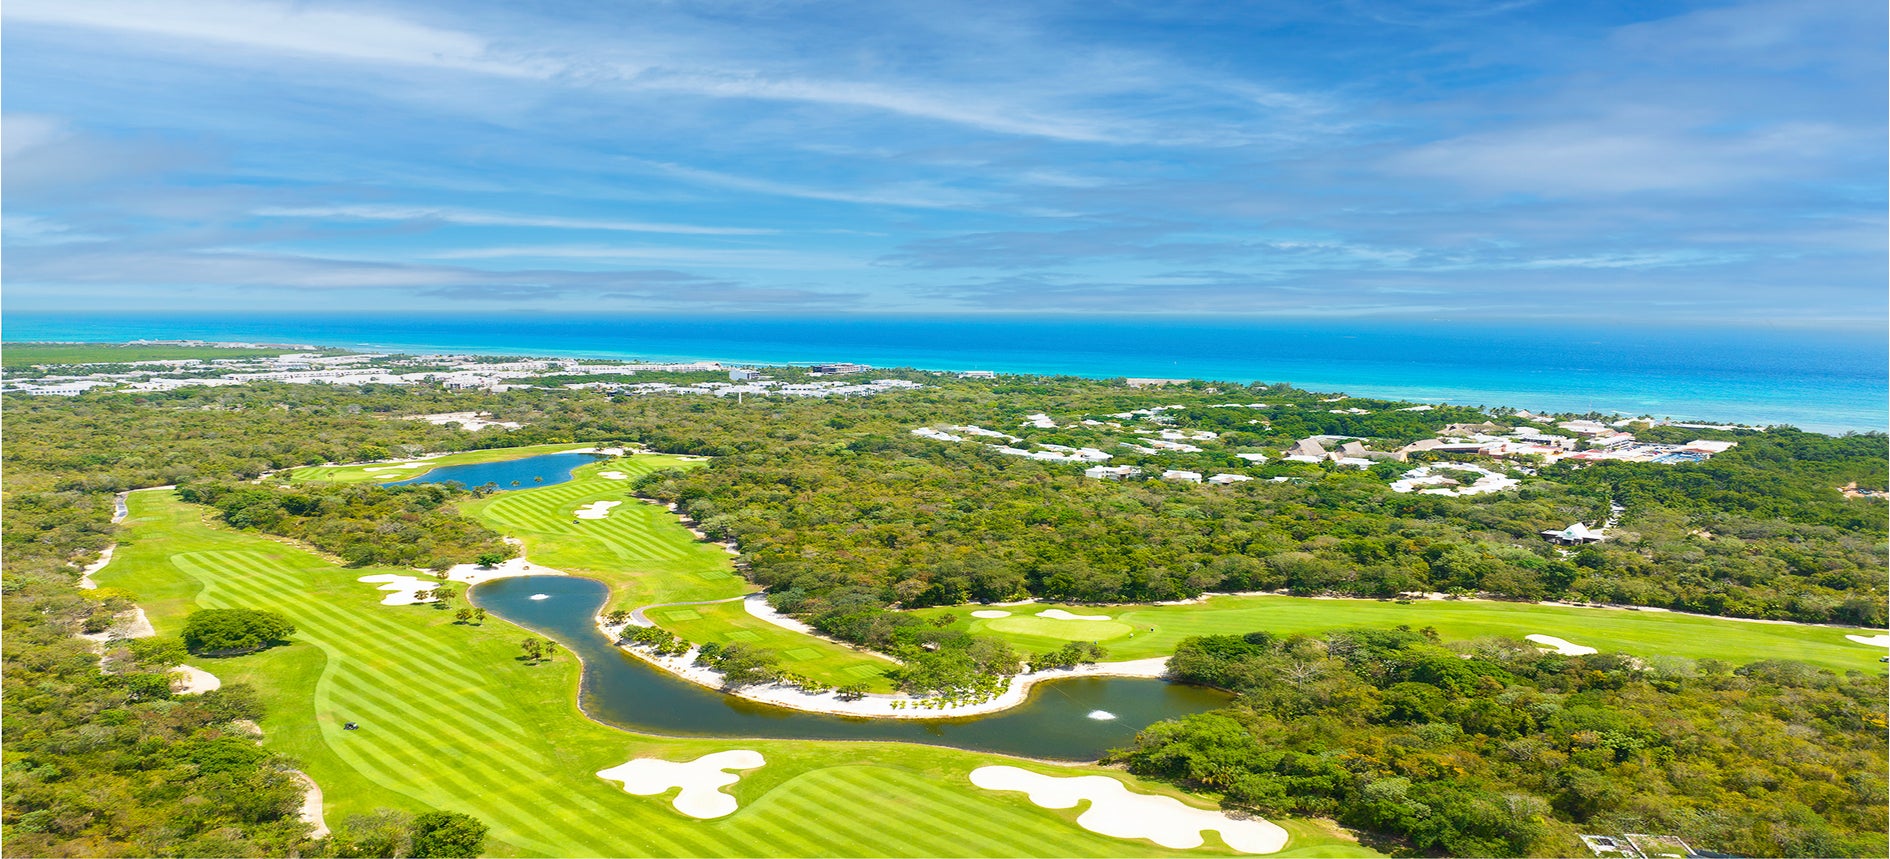 Golf course Mayakoba Riviera Maya